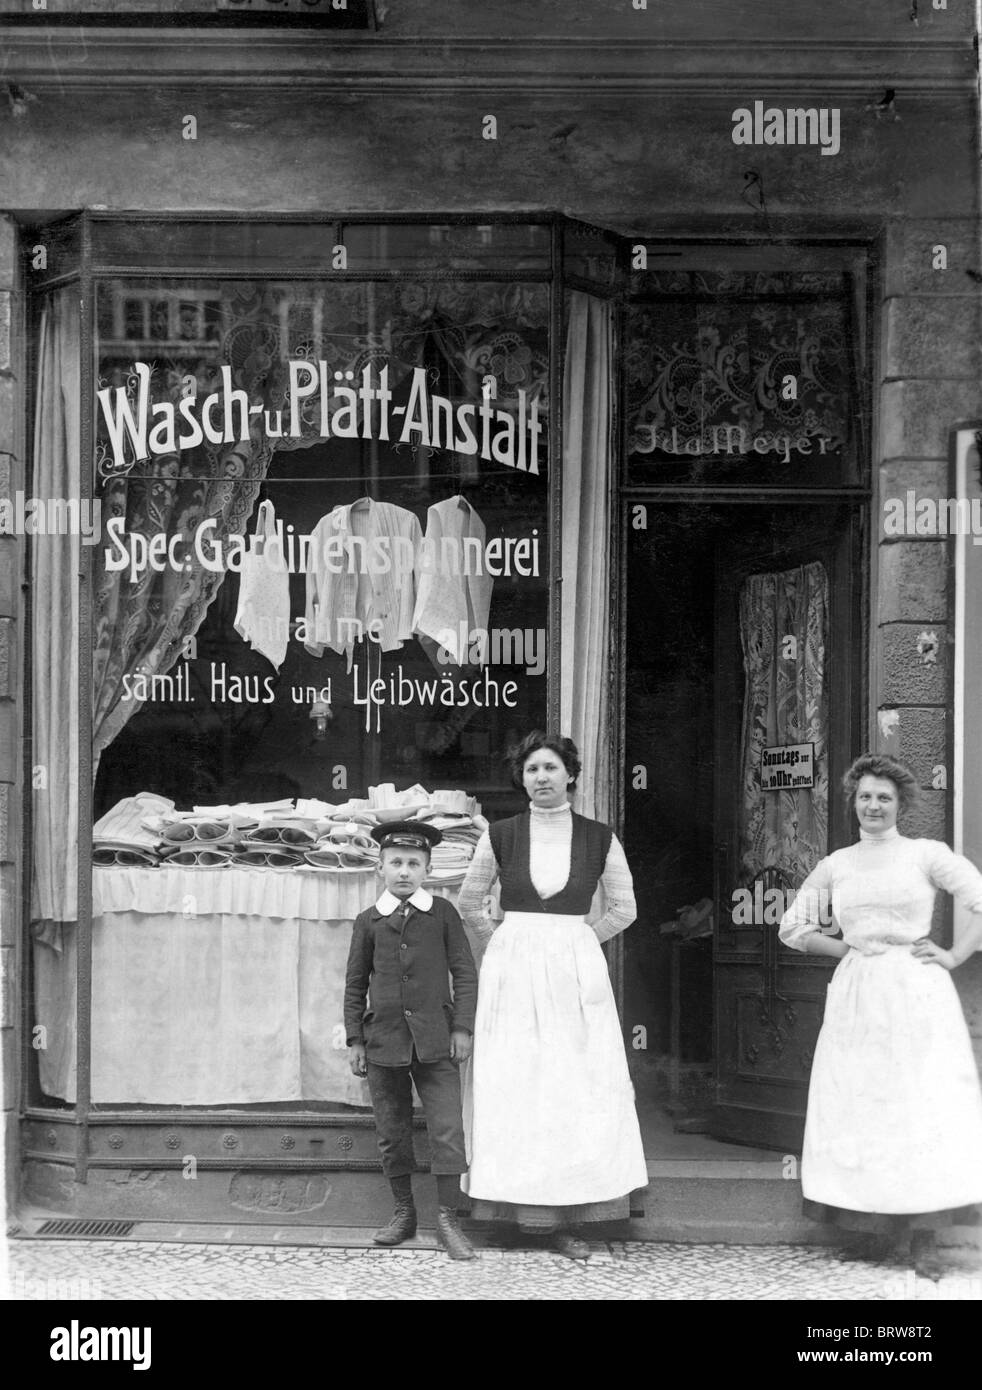 Waschen und Bügeln, Shop, historische Photgraph, ca. 1921 Stockfoto